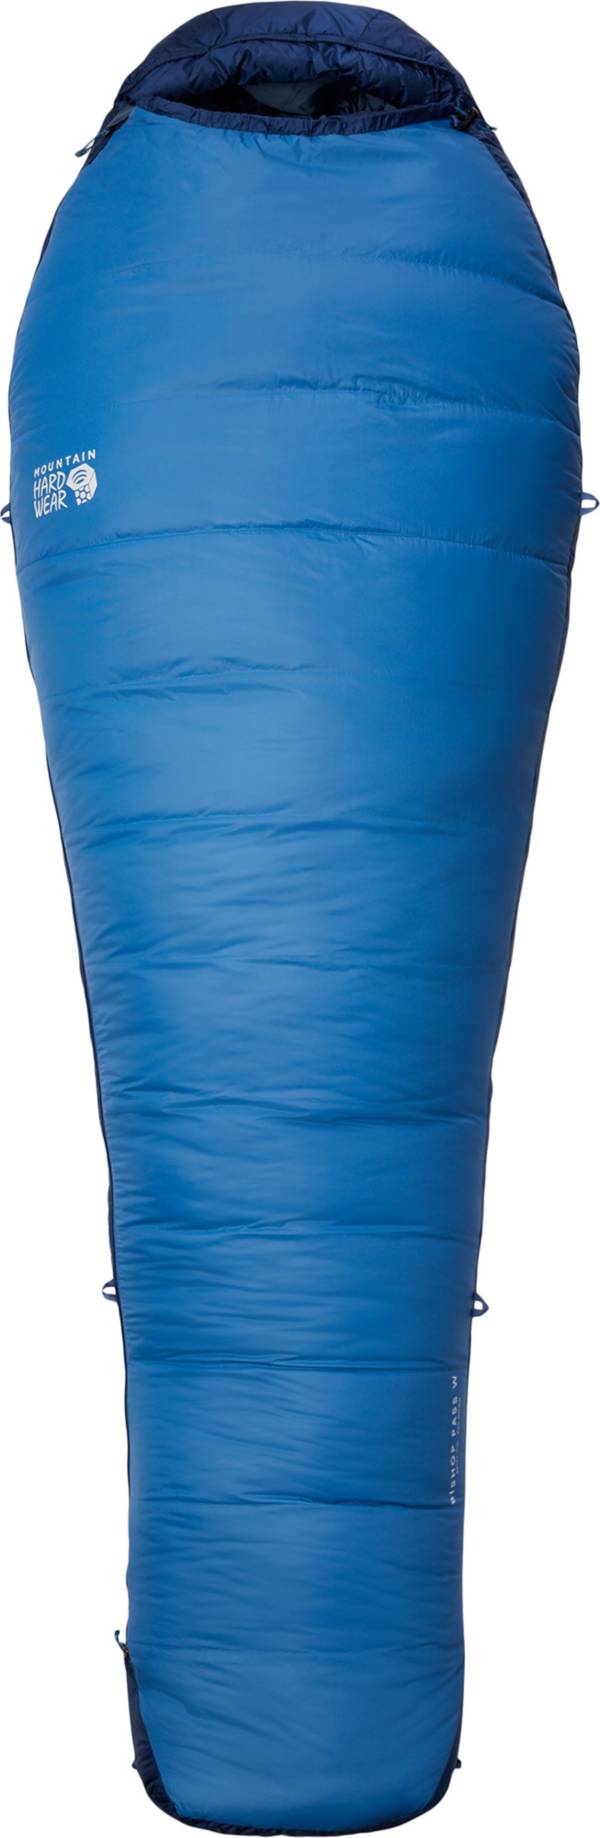 Mountain Hardwear Women's Bishop Pass 30 Sleeping Bag product image